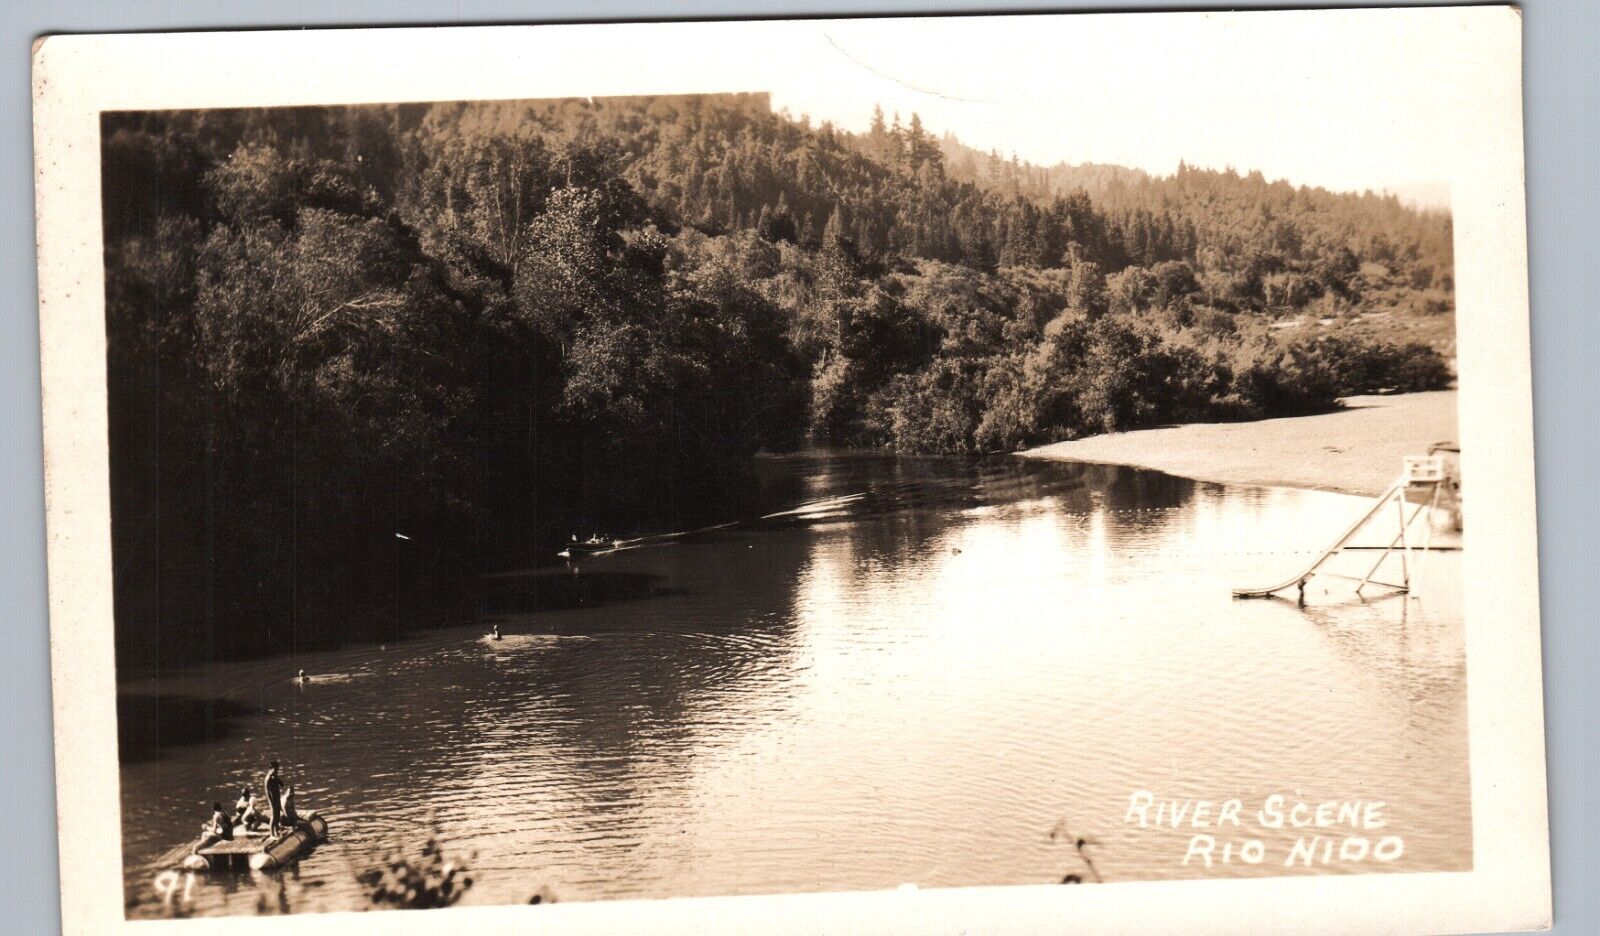 RIVER SCENE rio nido ca real photo postcard rppc california history swimming